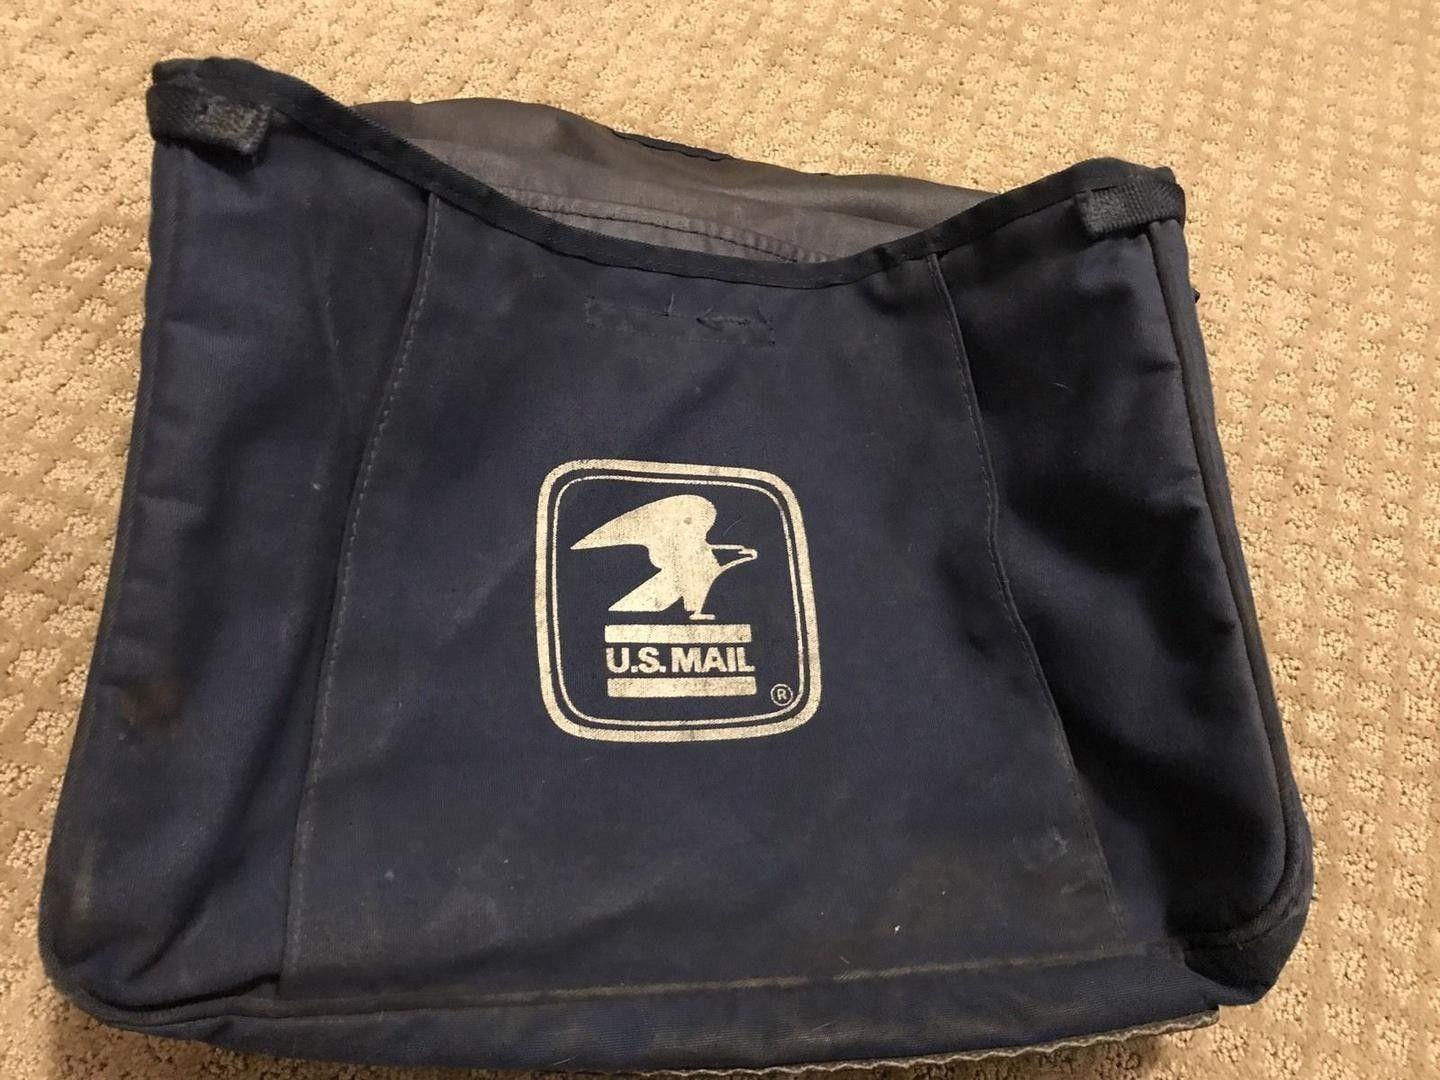 Old USPS Logo - USPS Old Logo vintage 90's Postal Carrier Bag With Leather Strap